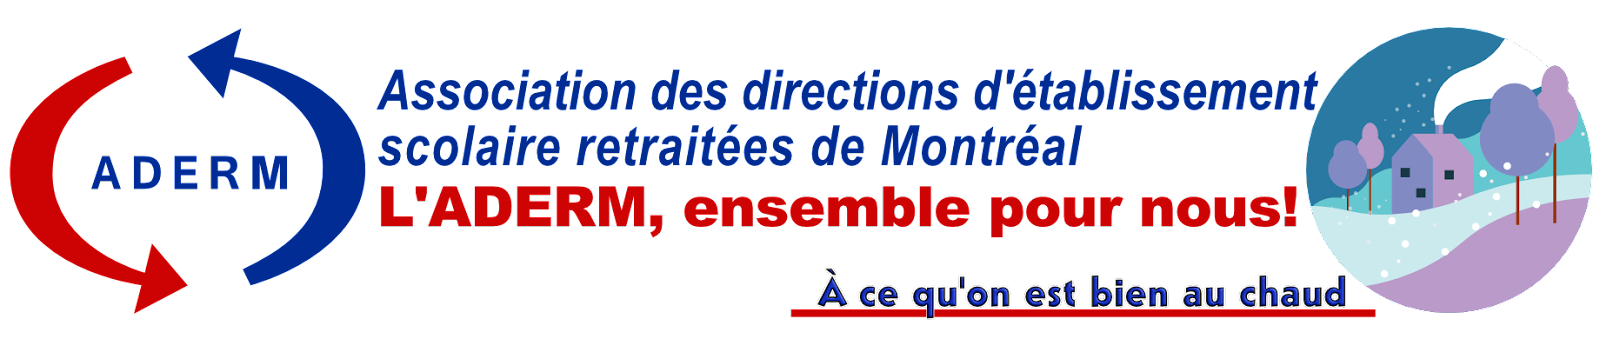 ADERM - Association des directions d'établissement scolaire retraitées de Montréal